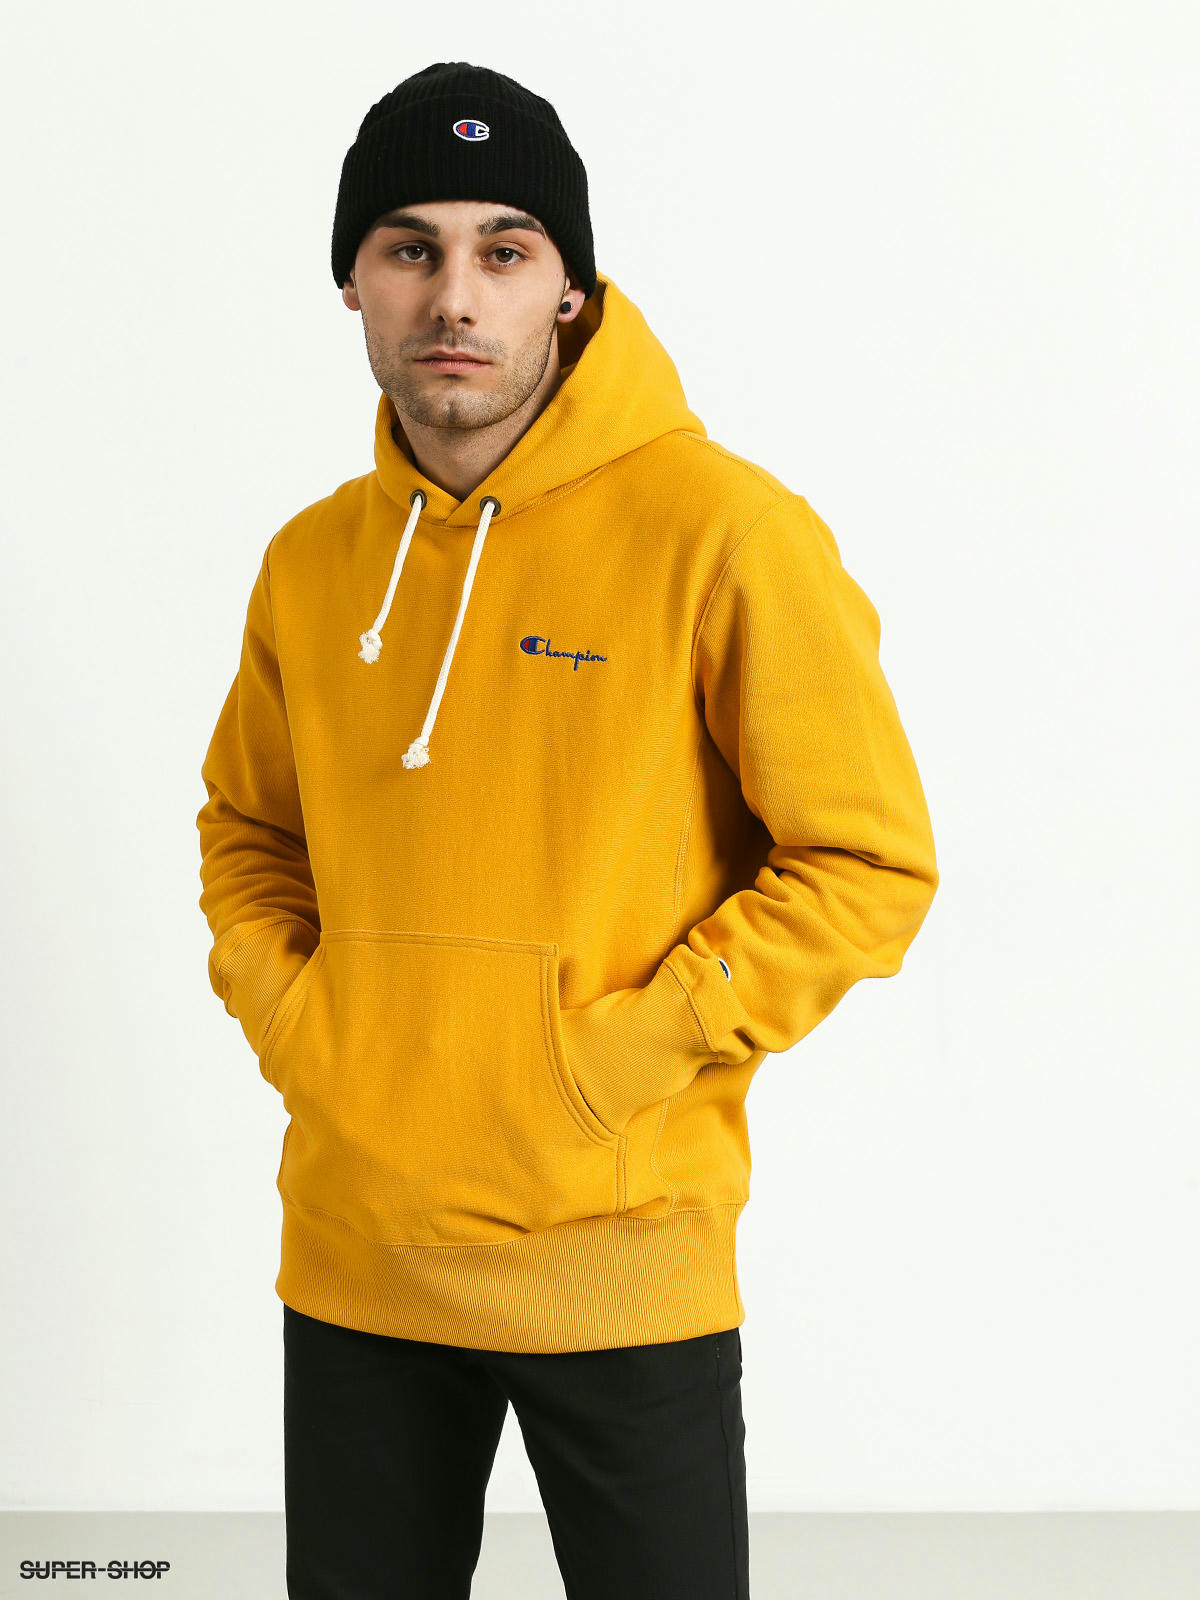 champion hooded sweatshirt yellow